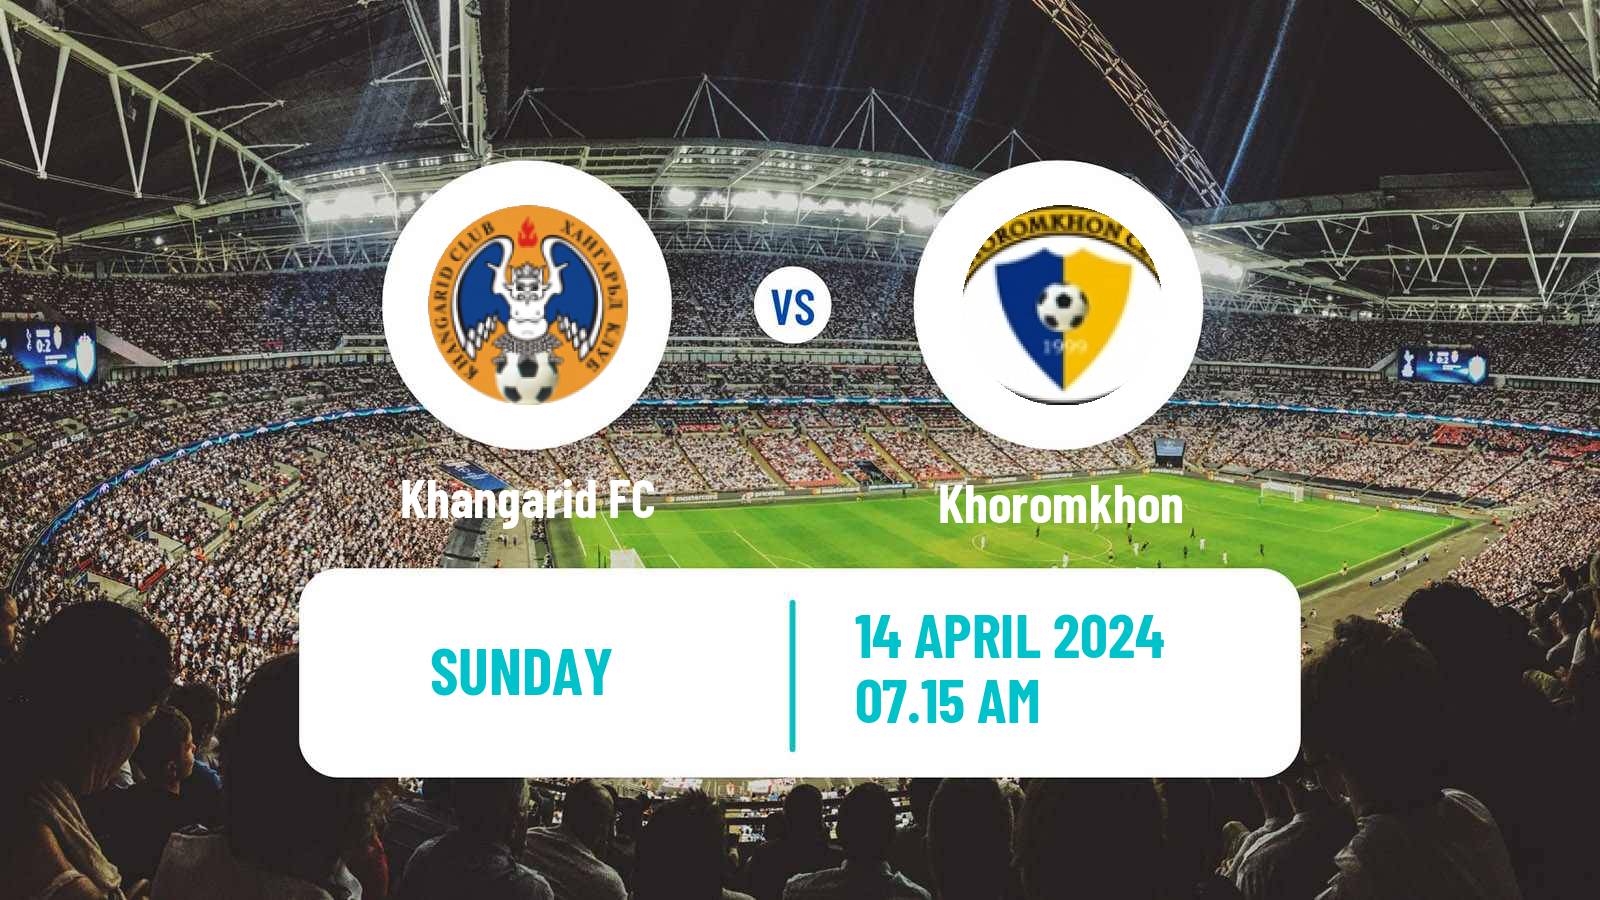 Soccer Mongolian Premier League Khangarid - Khoromkhon